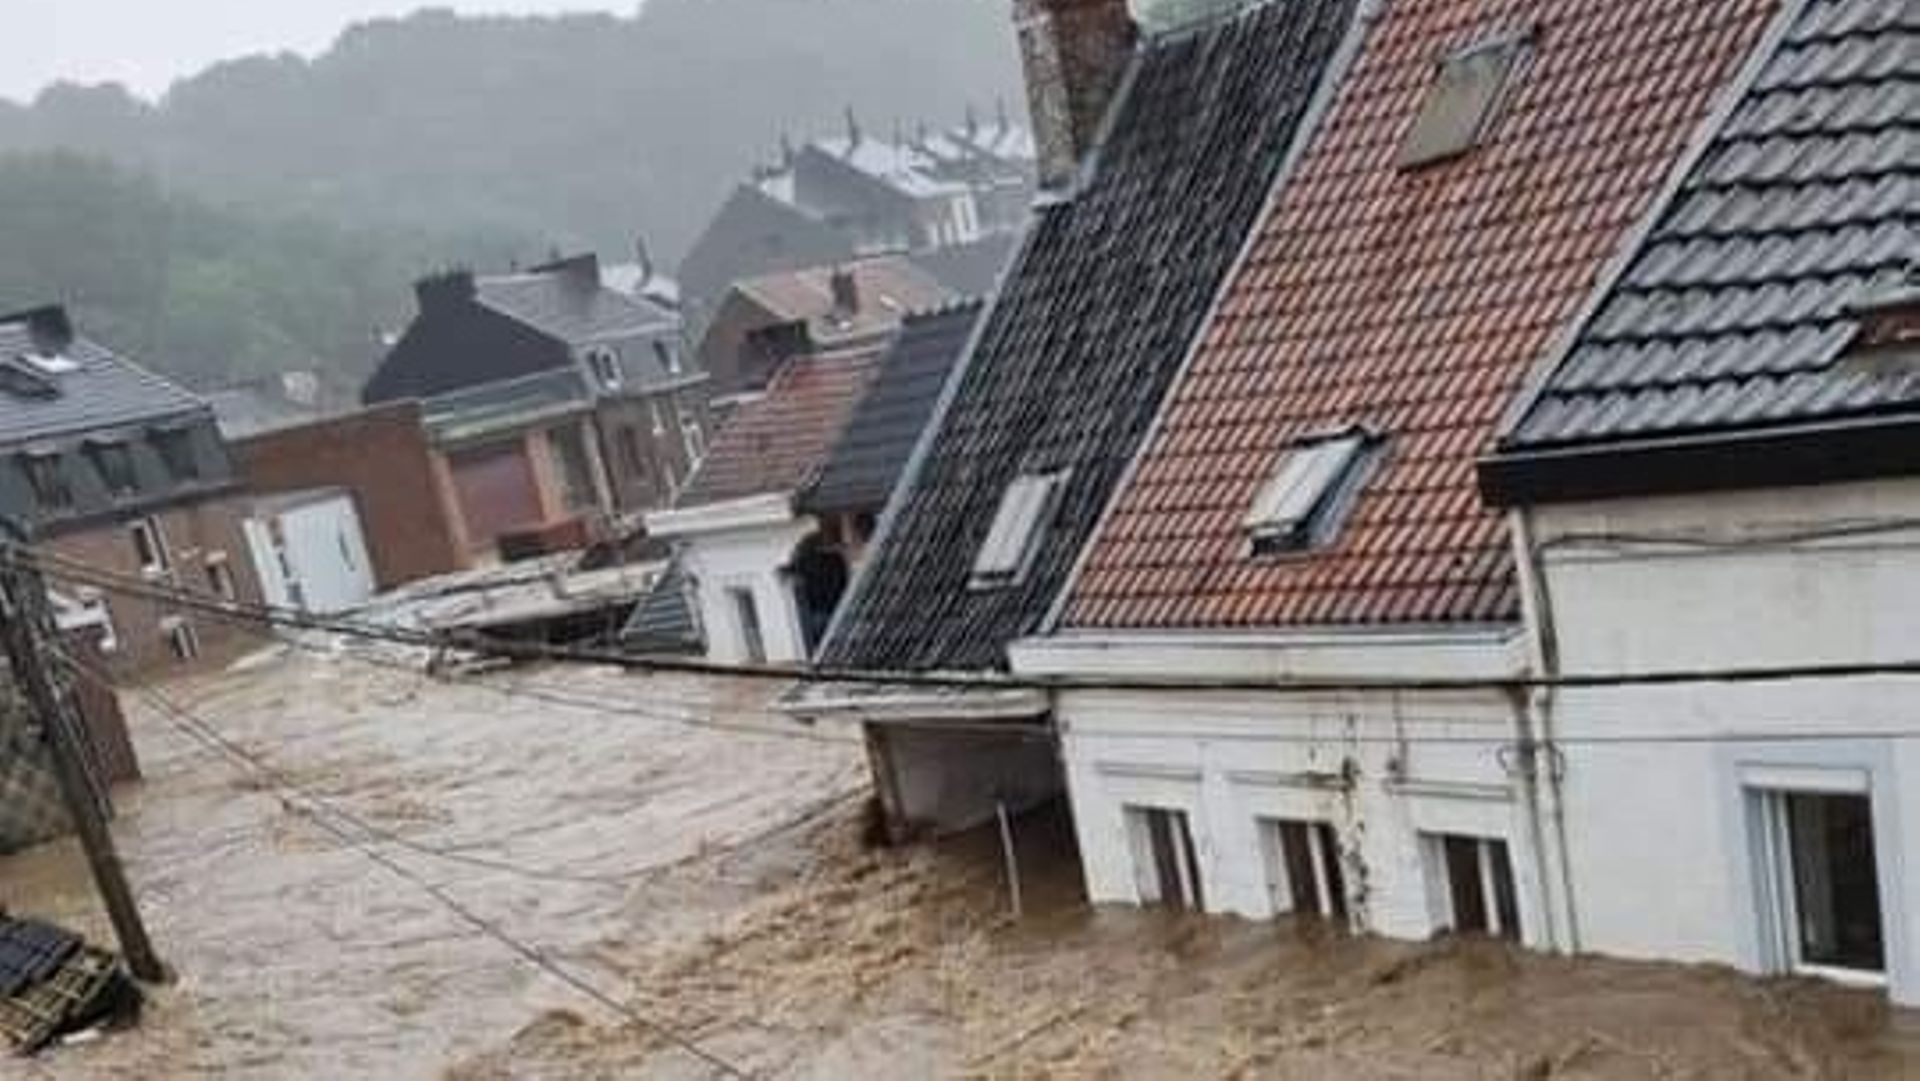 inondations-en-belgique-situation-critique-a-pepinster-trois-personnes-portees-disparues-des-maisons-se-sont-effondrees